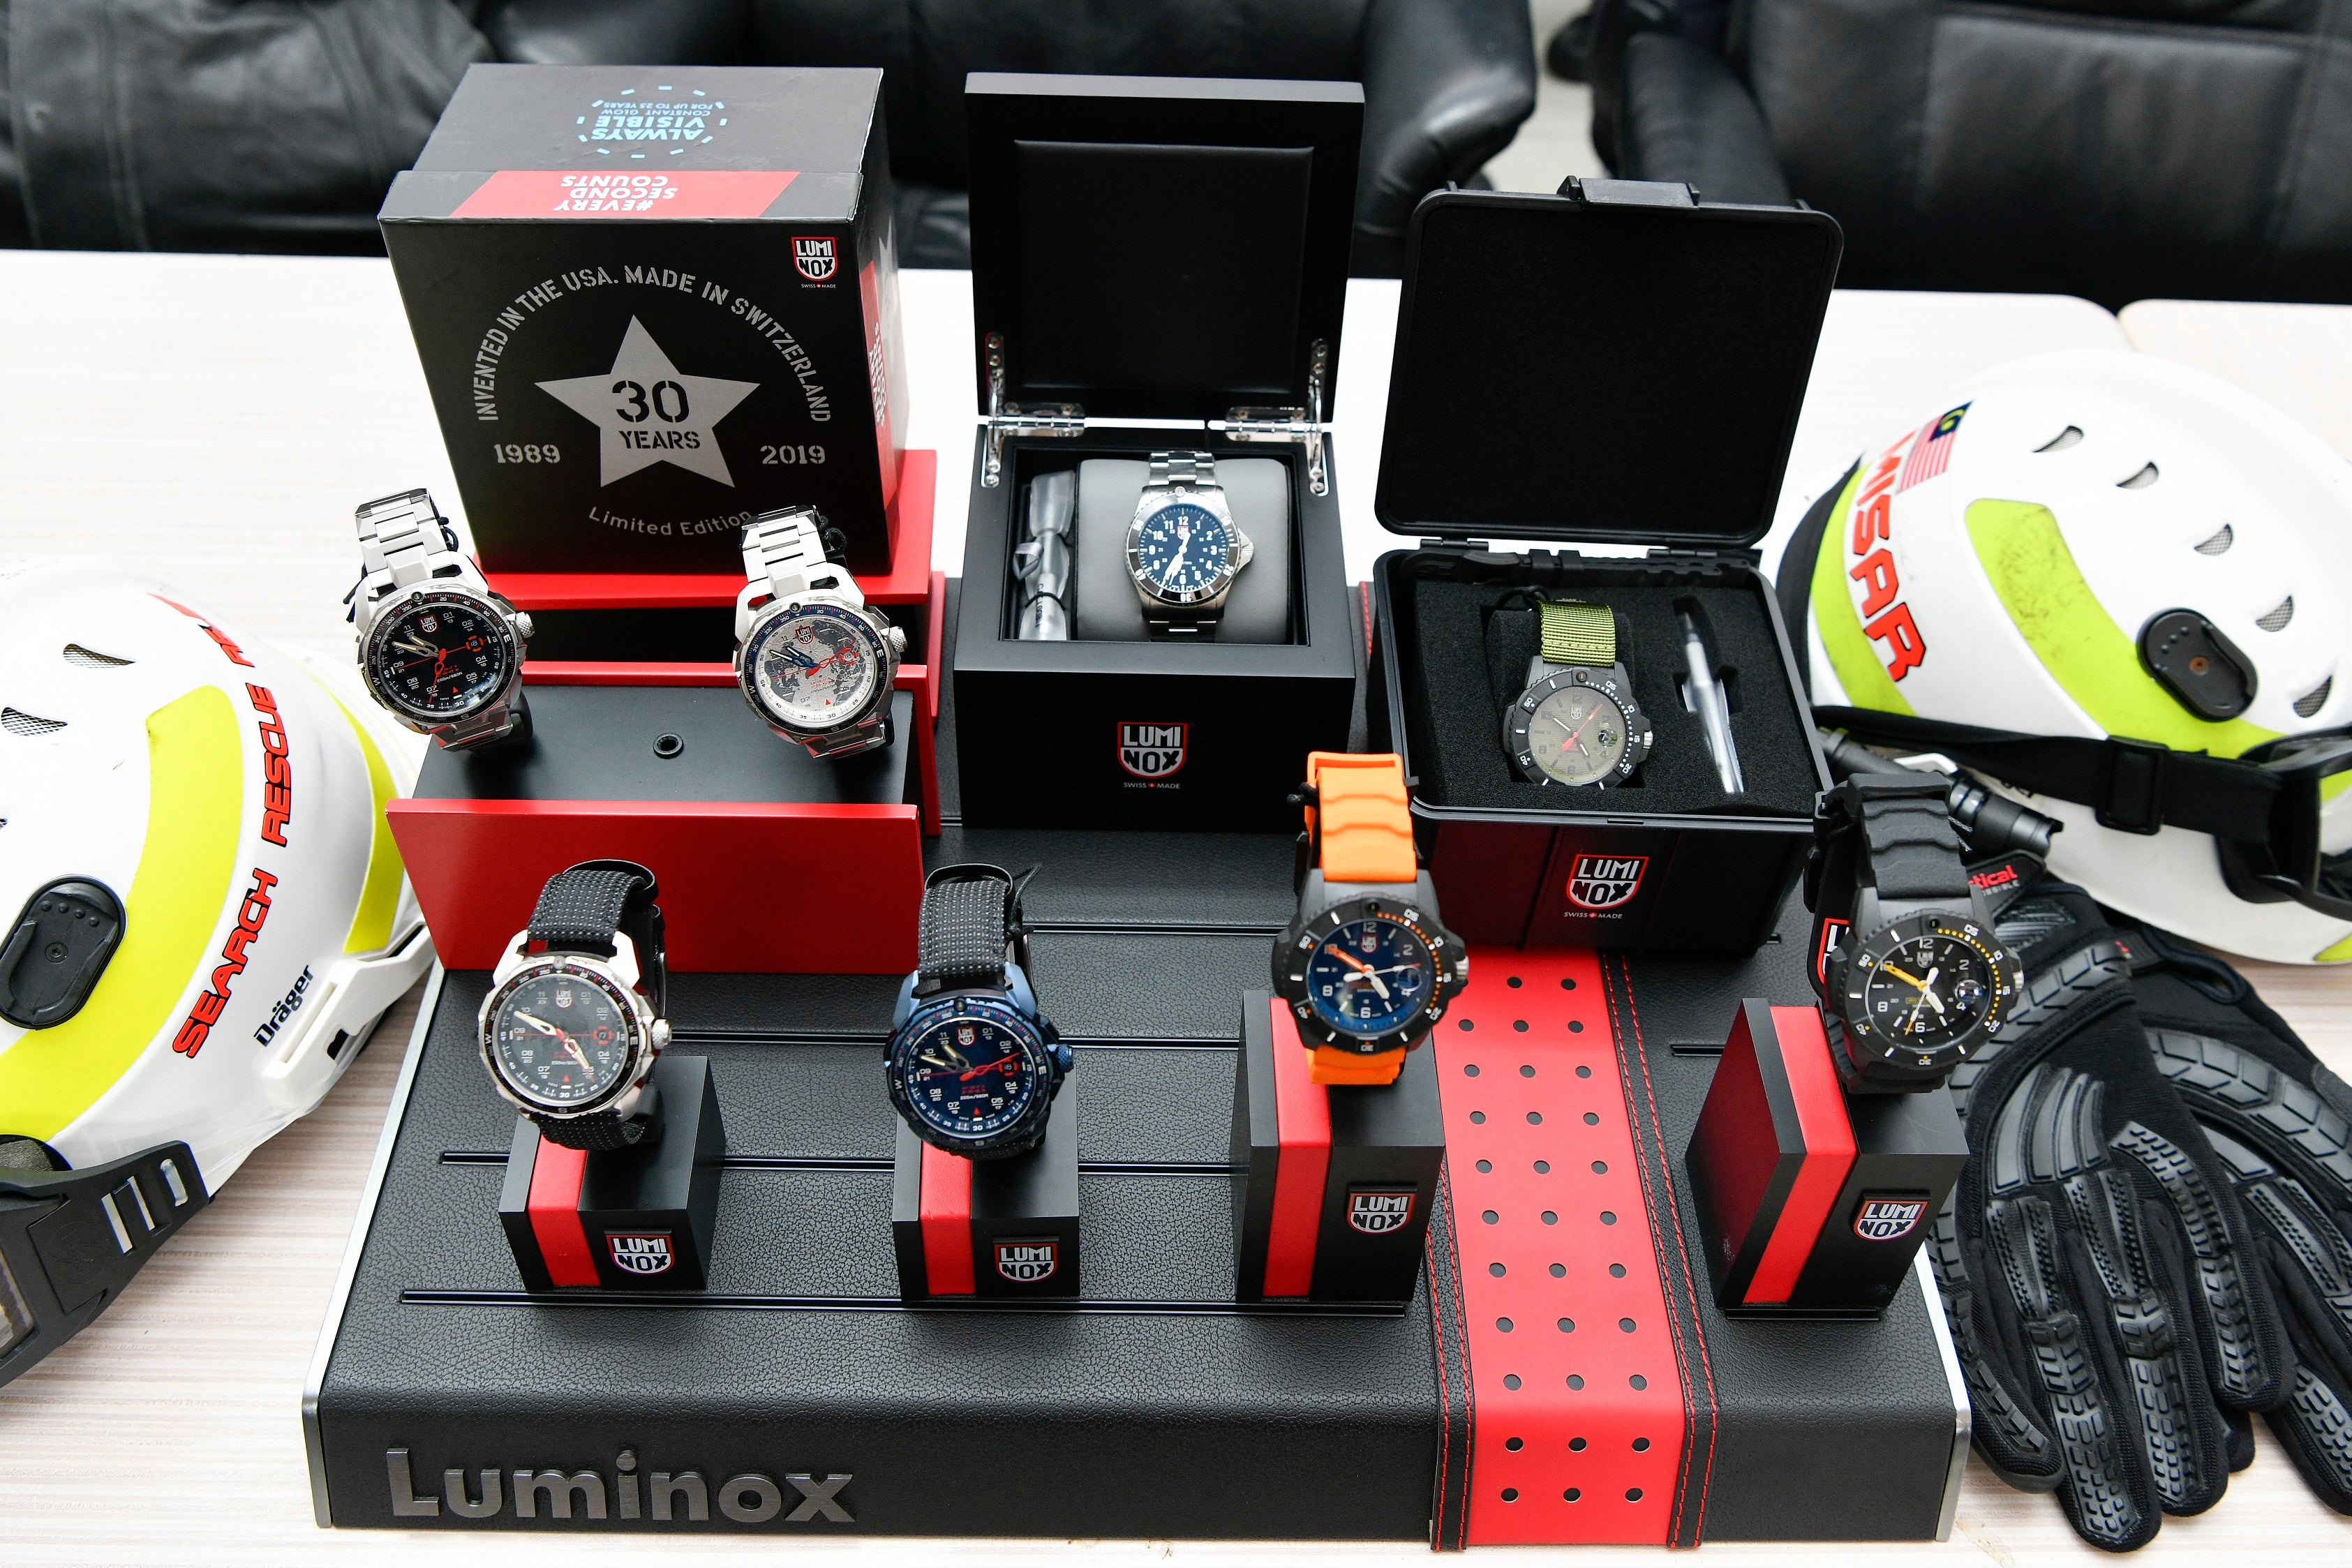 Luminox New Watches